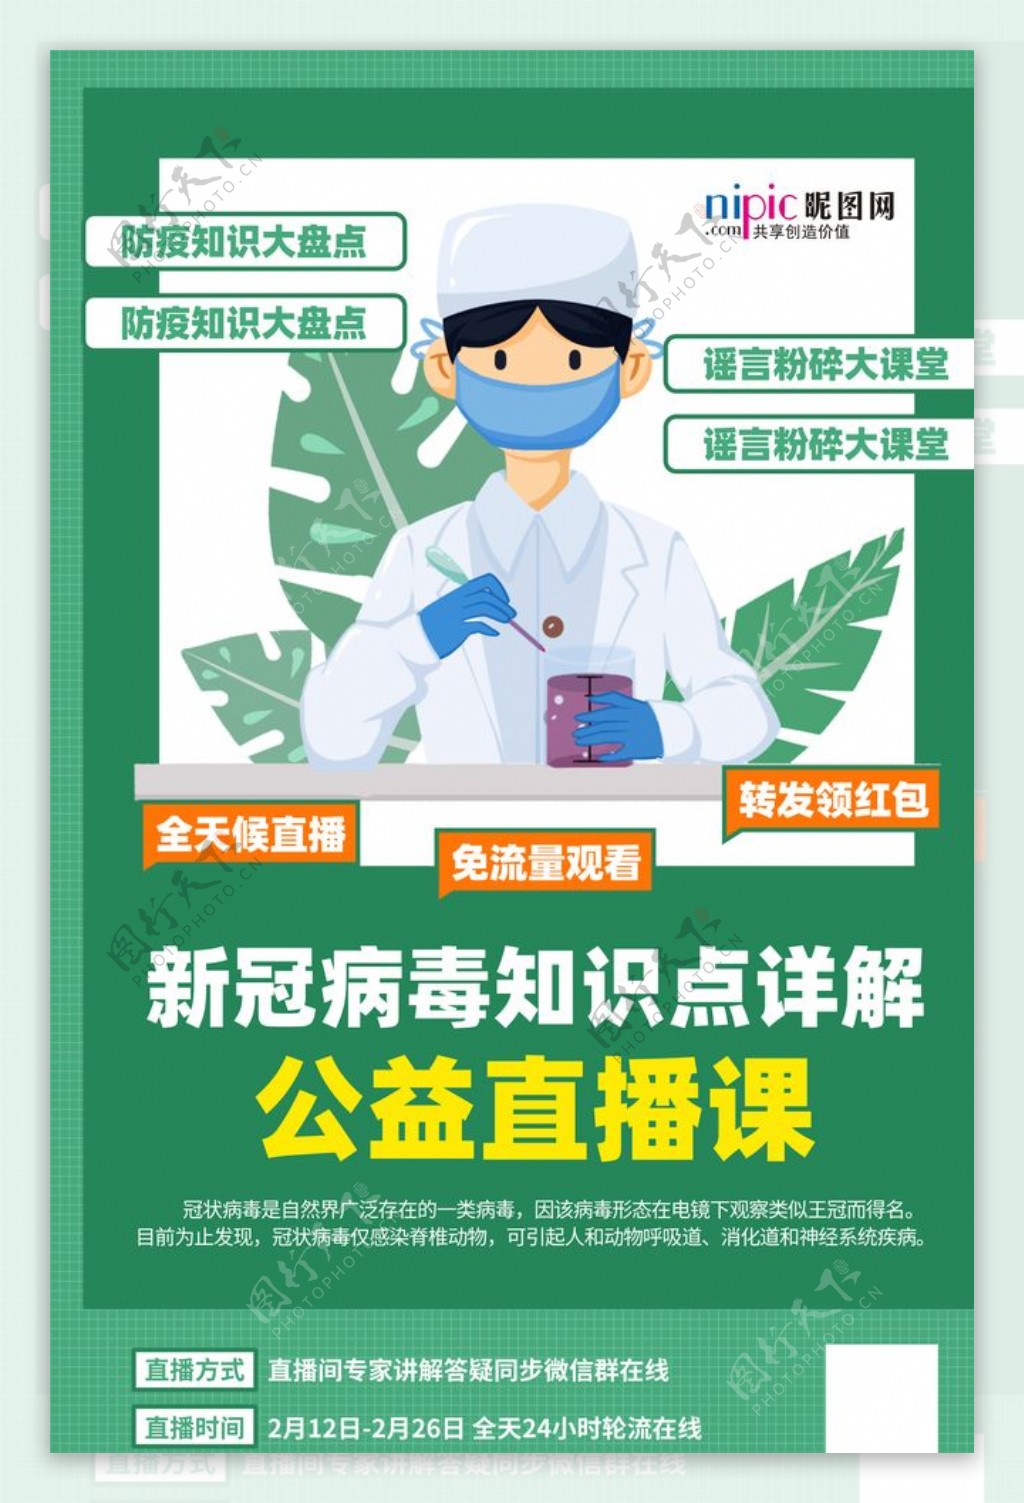 武汉病毒疫情线上问诊咨询海报